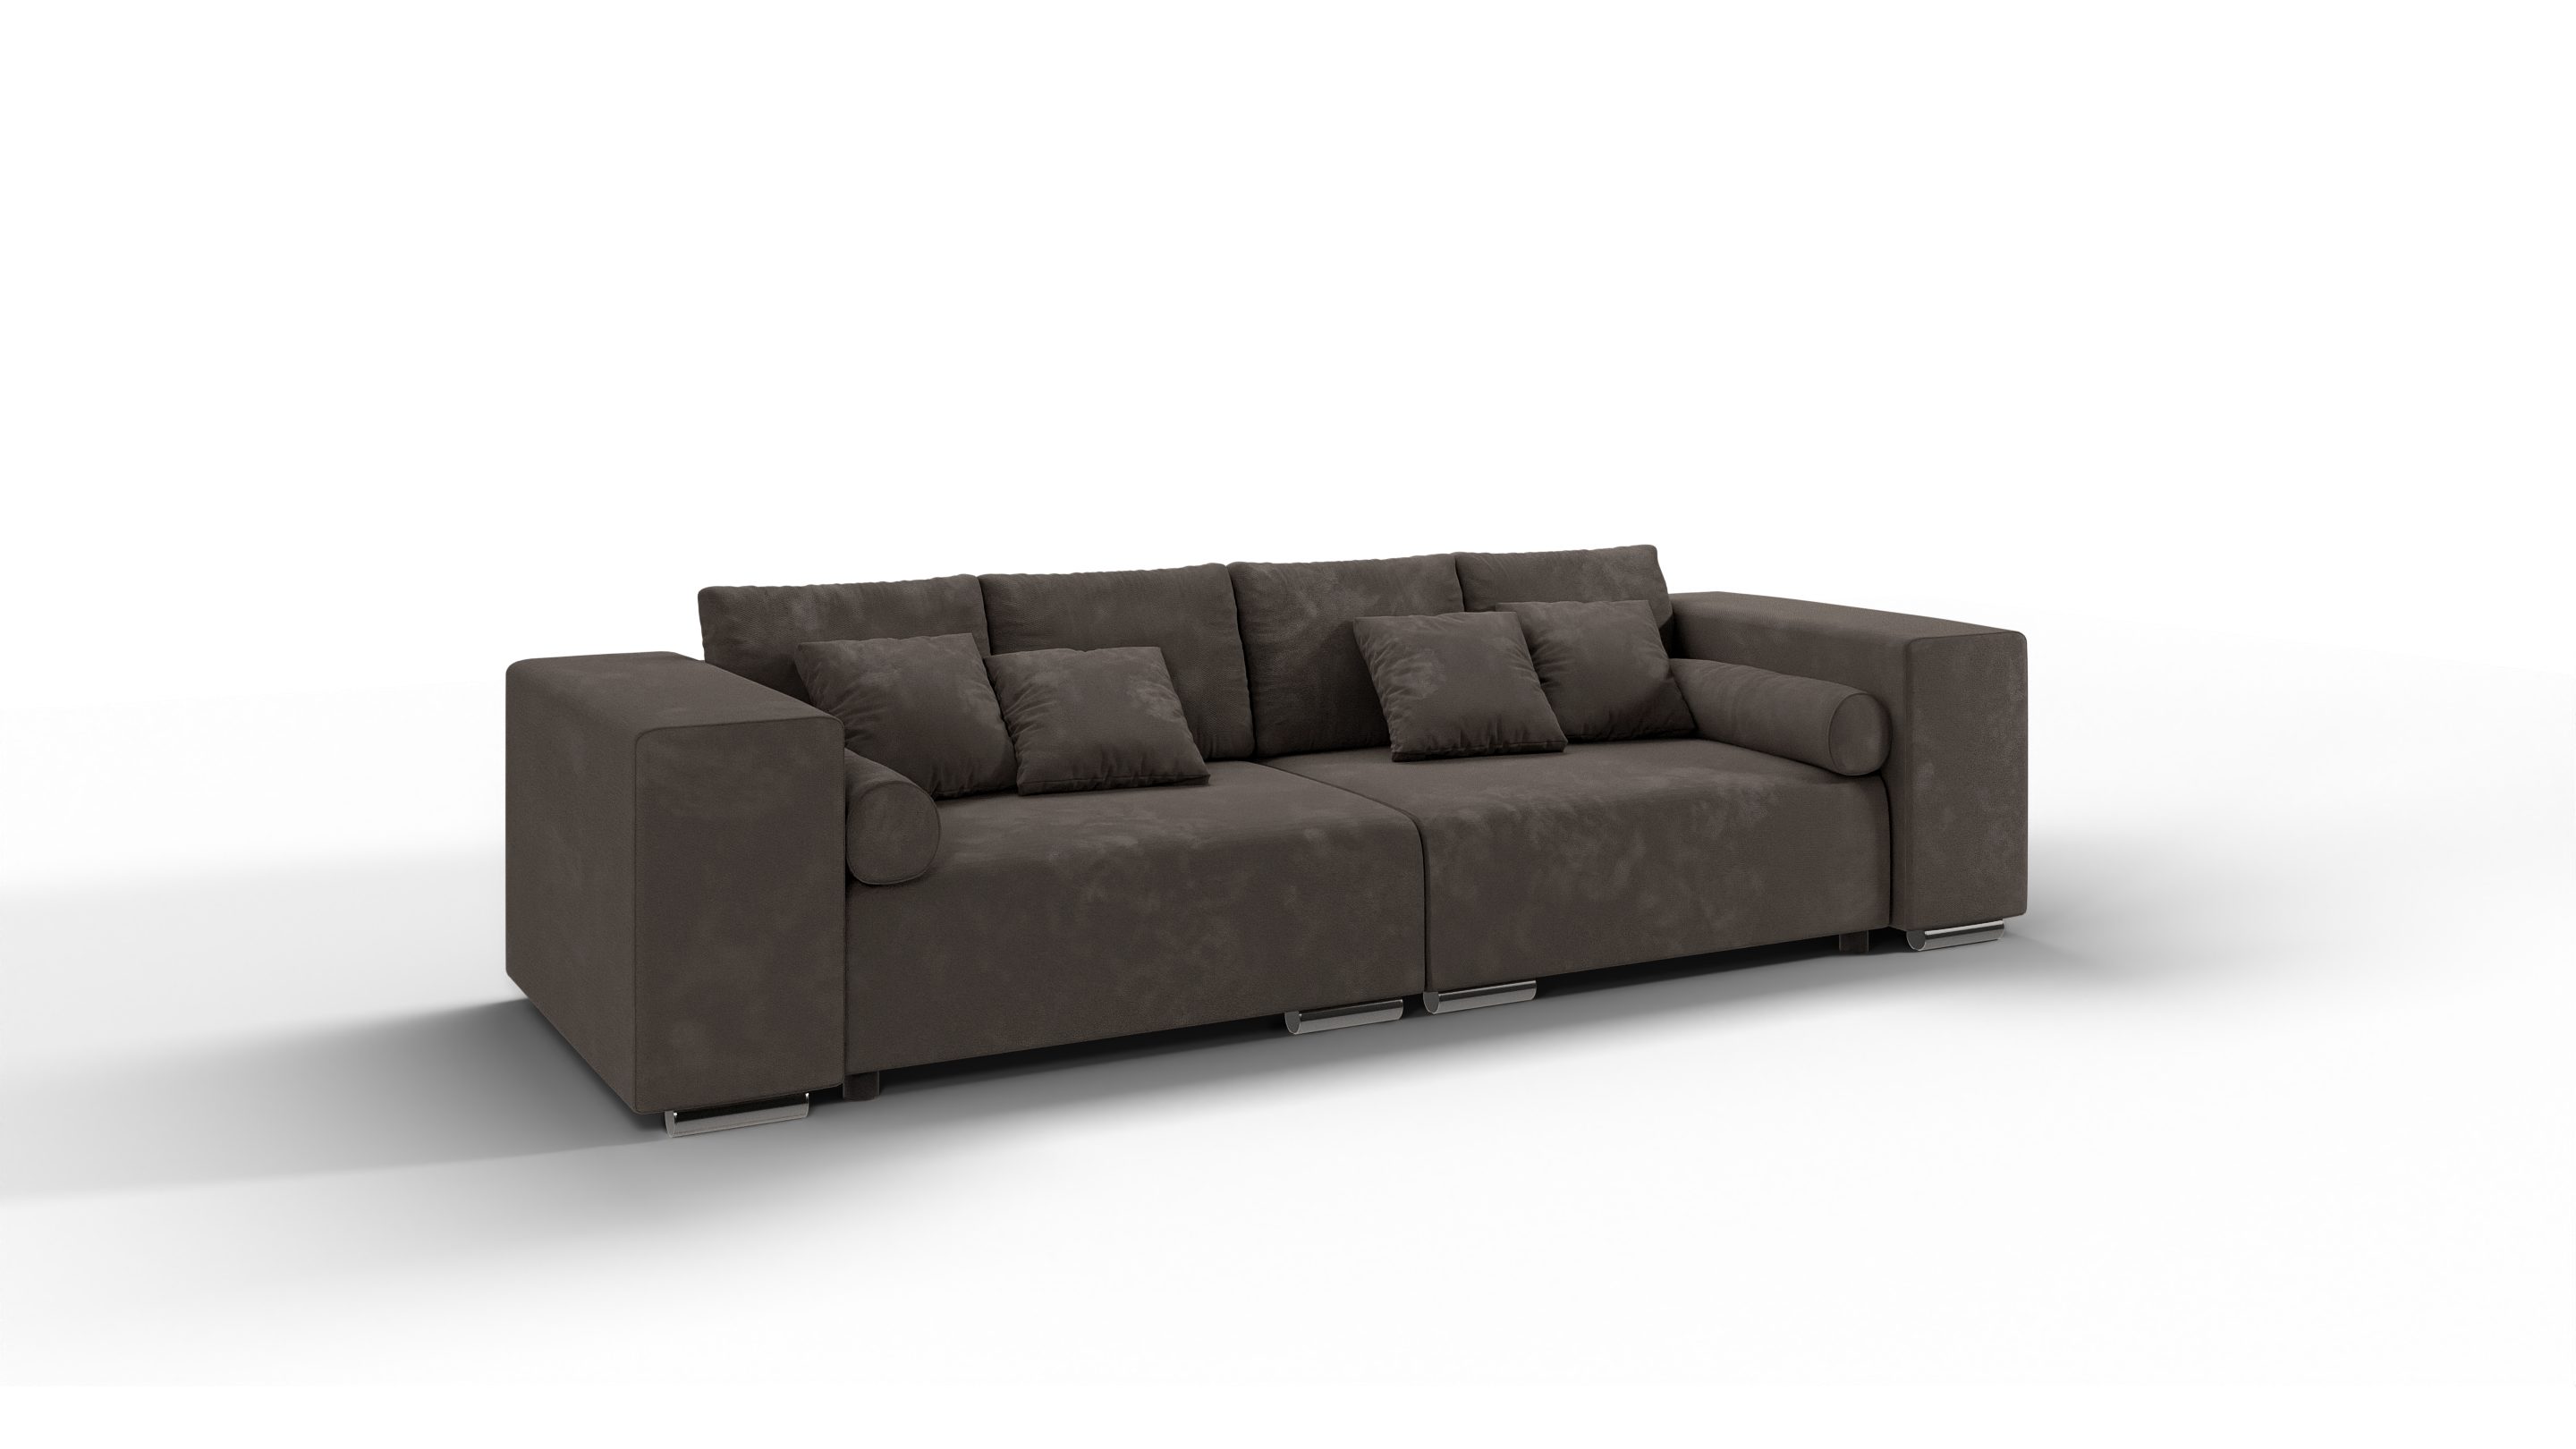 Big-Sofa 5-Sitzer mit S-Style Braun Cork Wellenfederung mit Khaki Schlaffunktion, Möbel -